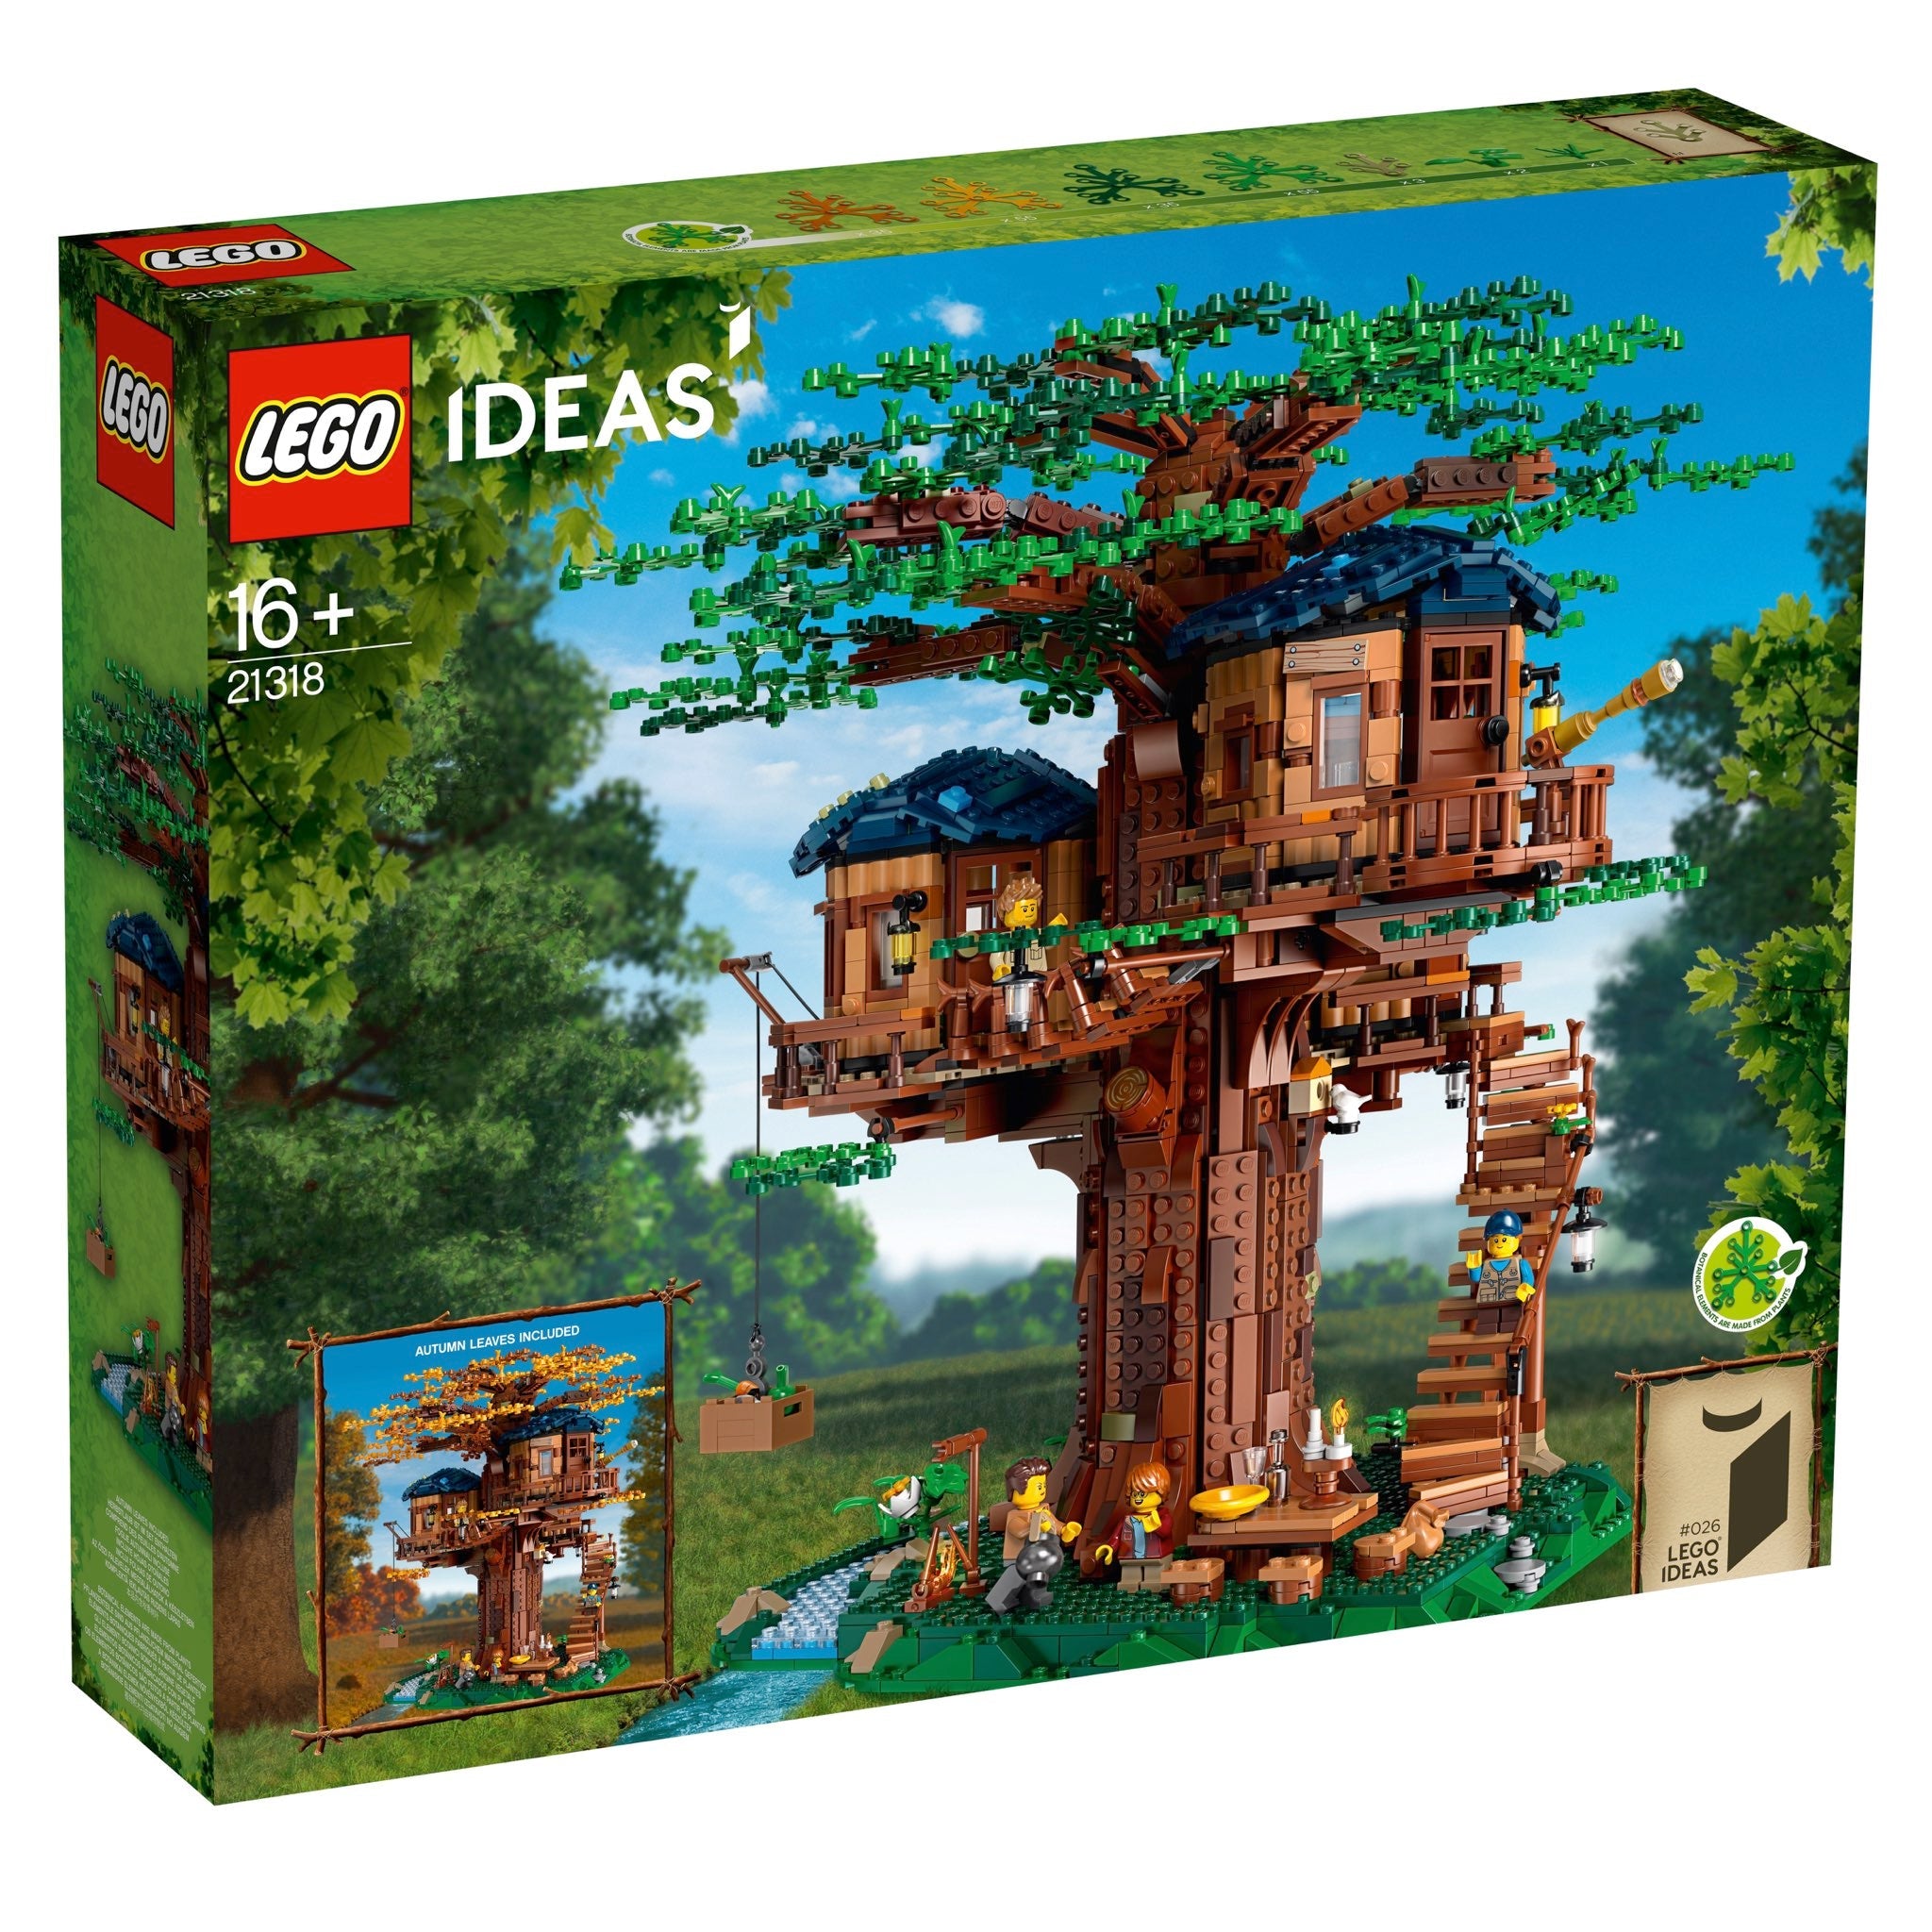 LEGO Ideas Baumhaus (21318) - im GOLDSTIEN.SHOP verfügbar mit Gratisversand ab Schweizer Lager! (5702016554205)